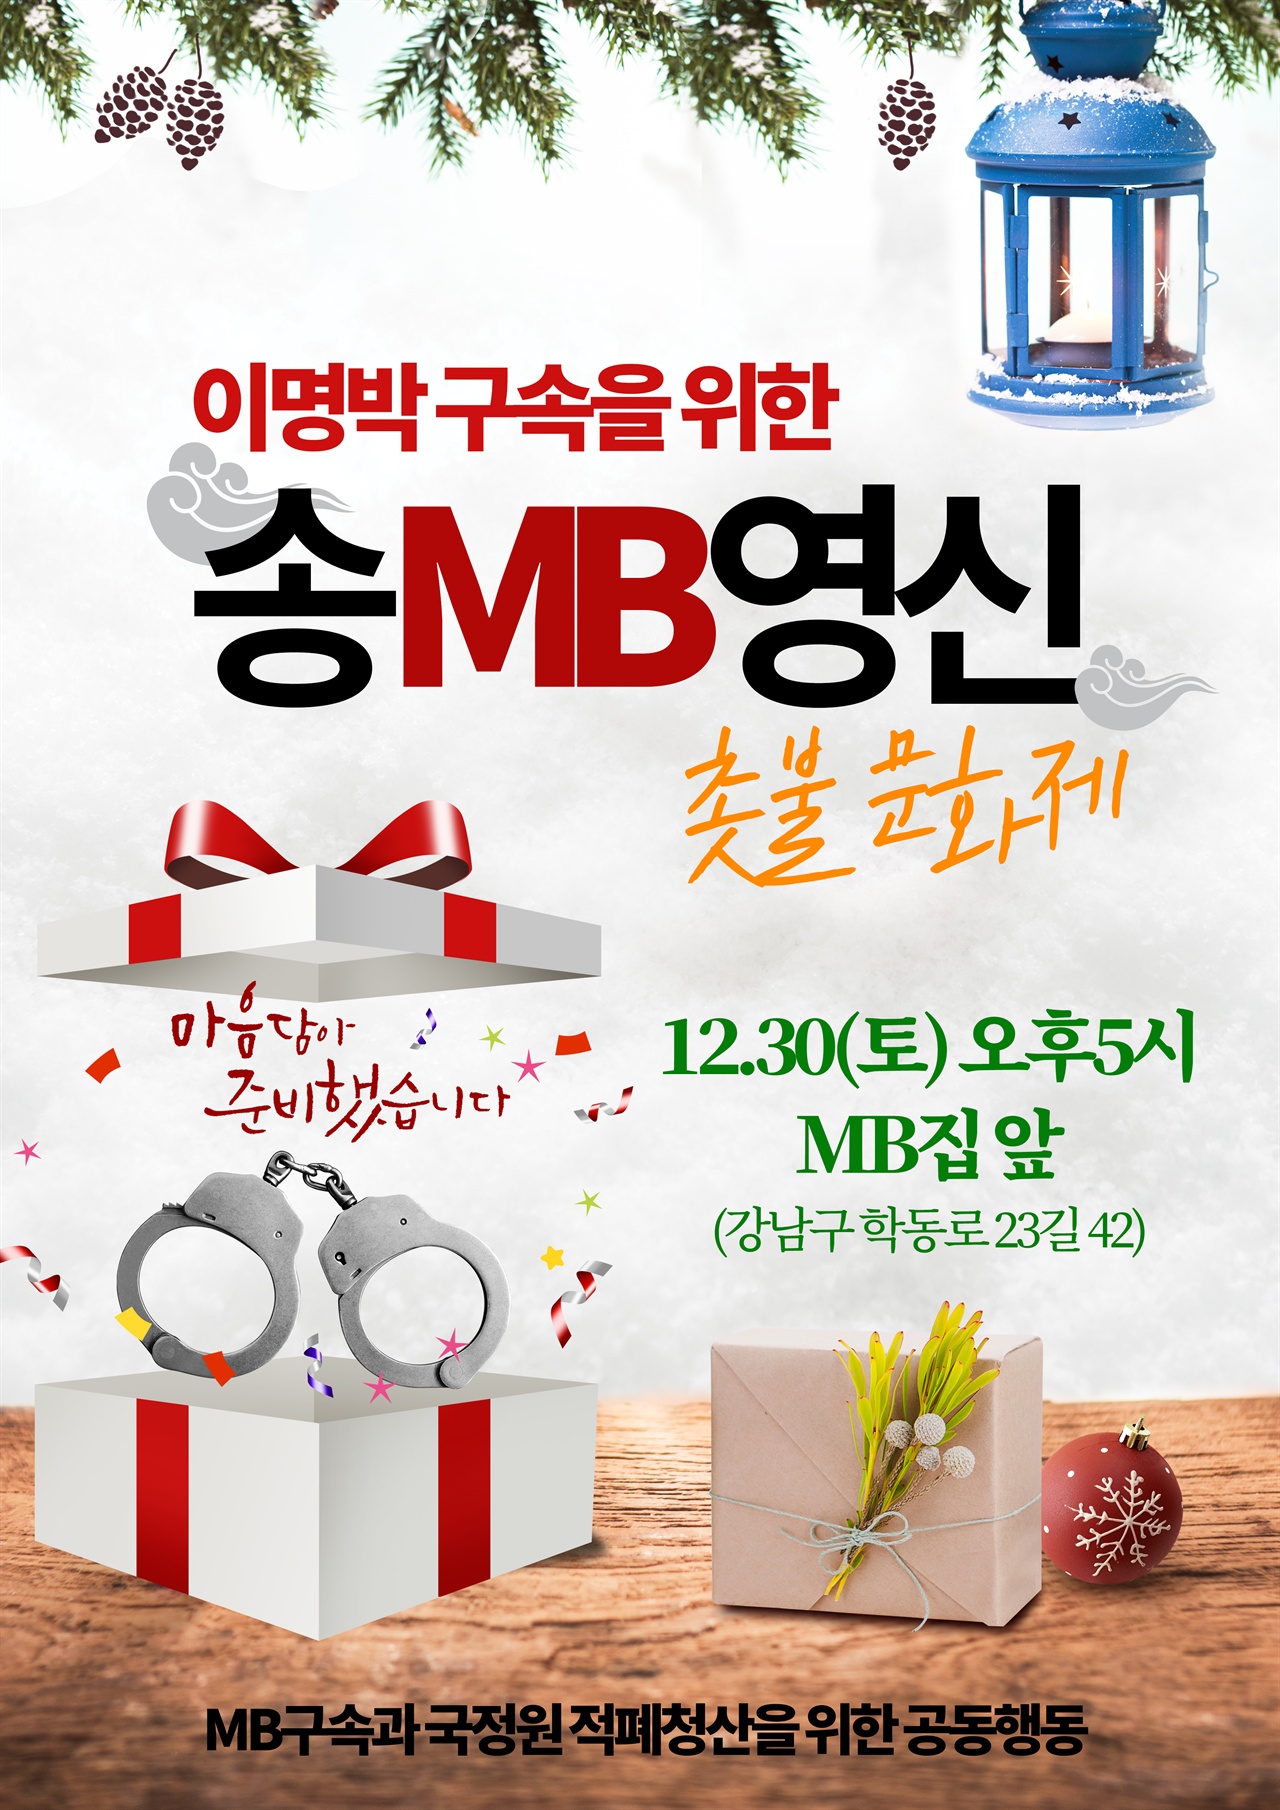 이명박 구속을 위한 송MB영신 촛불 문화제가 12월 30일 오후5시 MB집앞에서 개최된다.